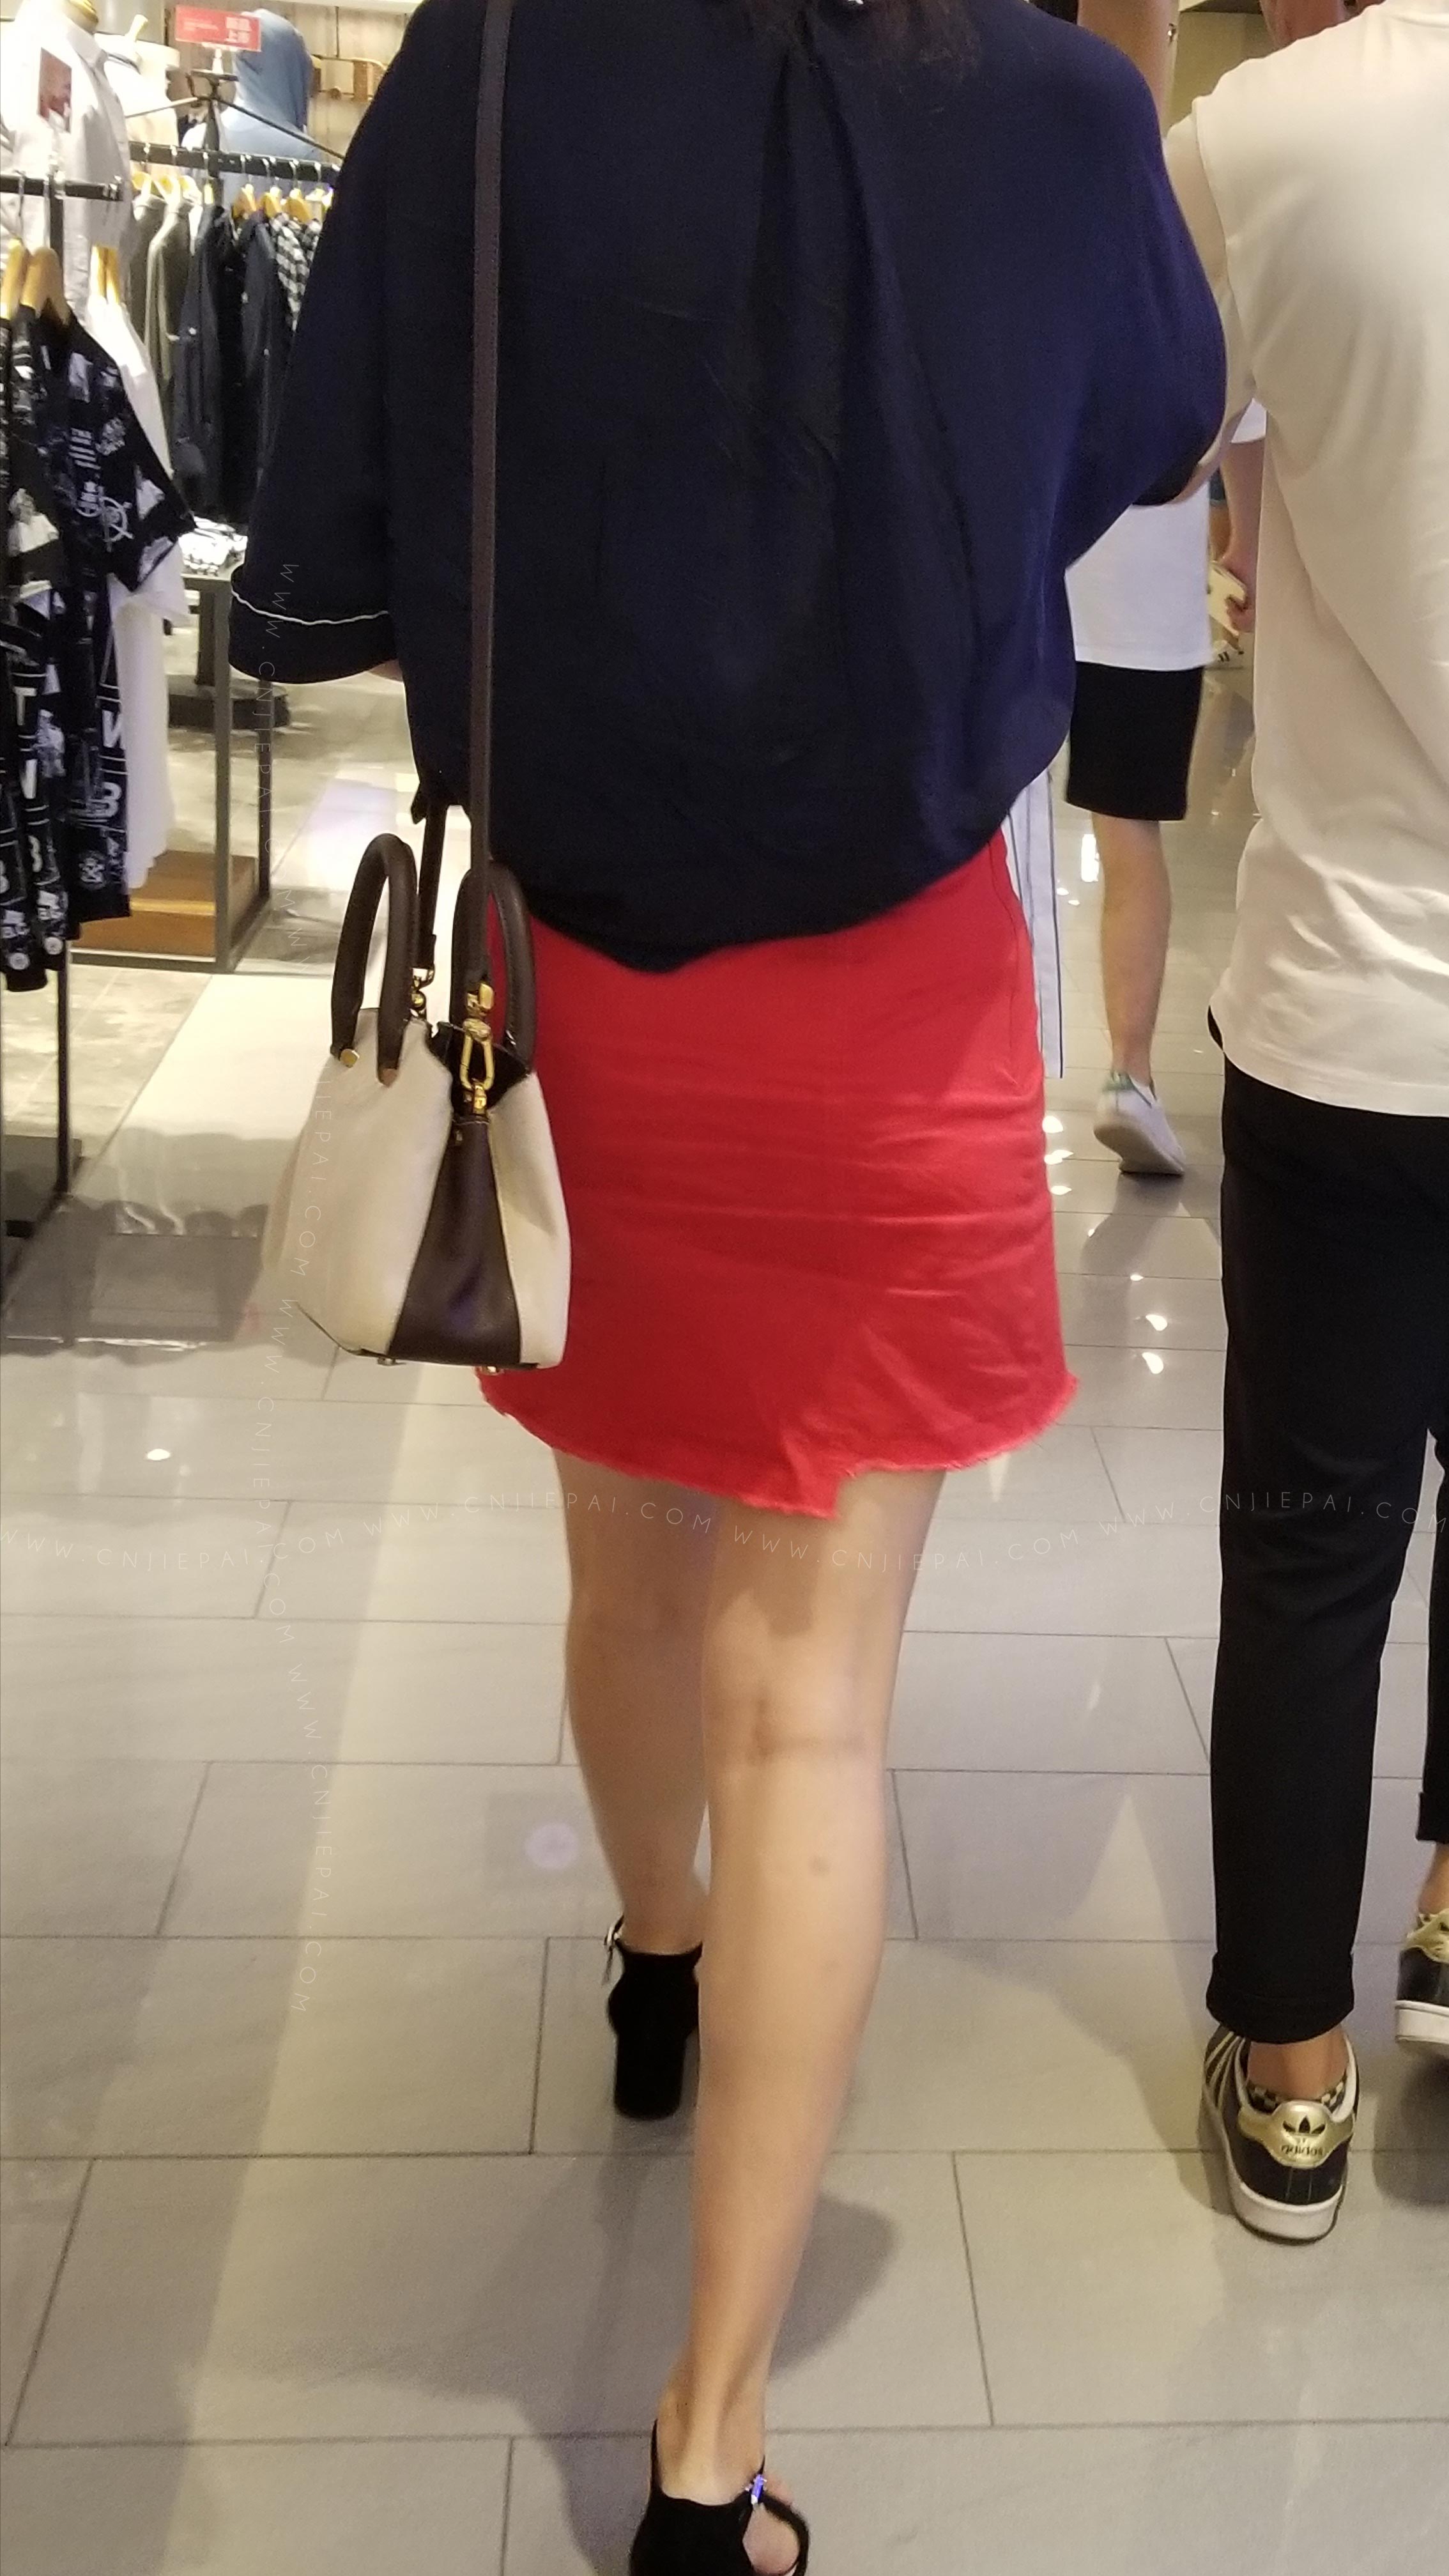 跟拍逛商场的红裙长腿美女 图3